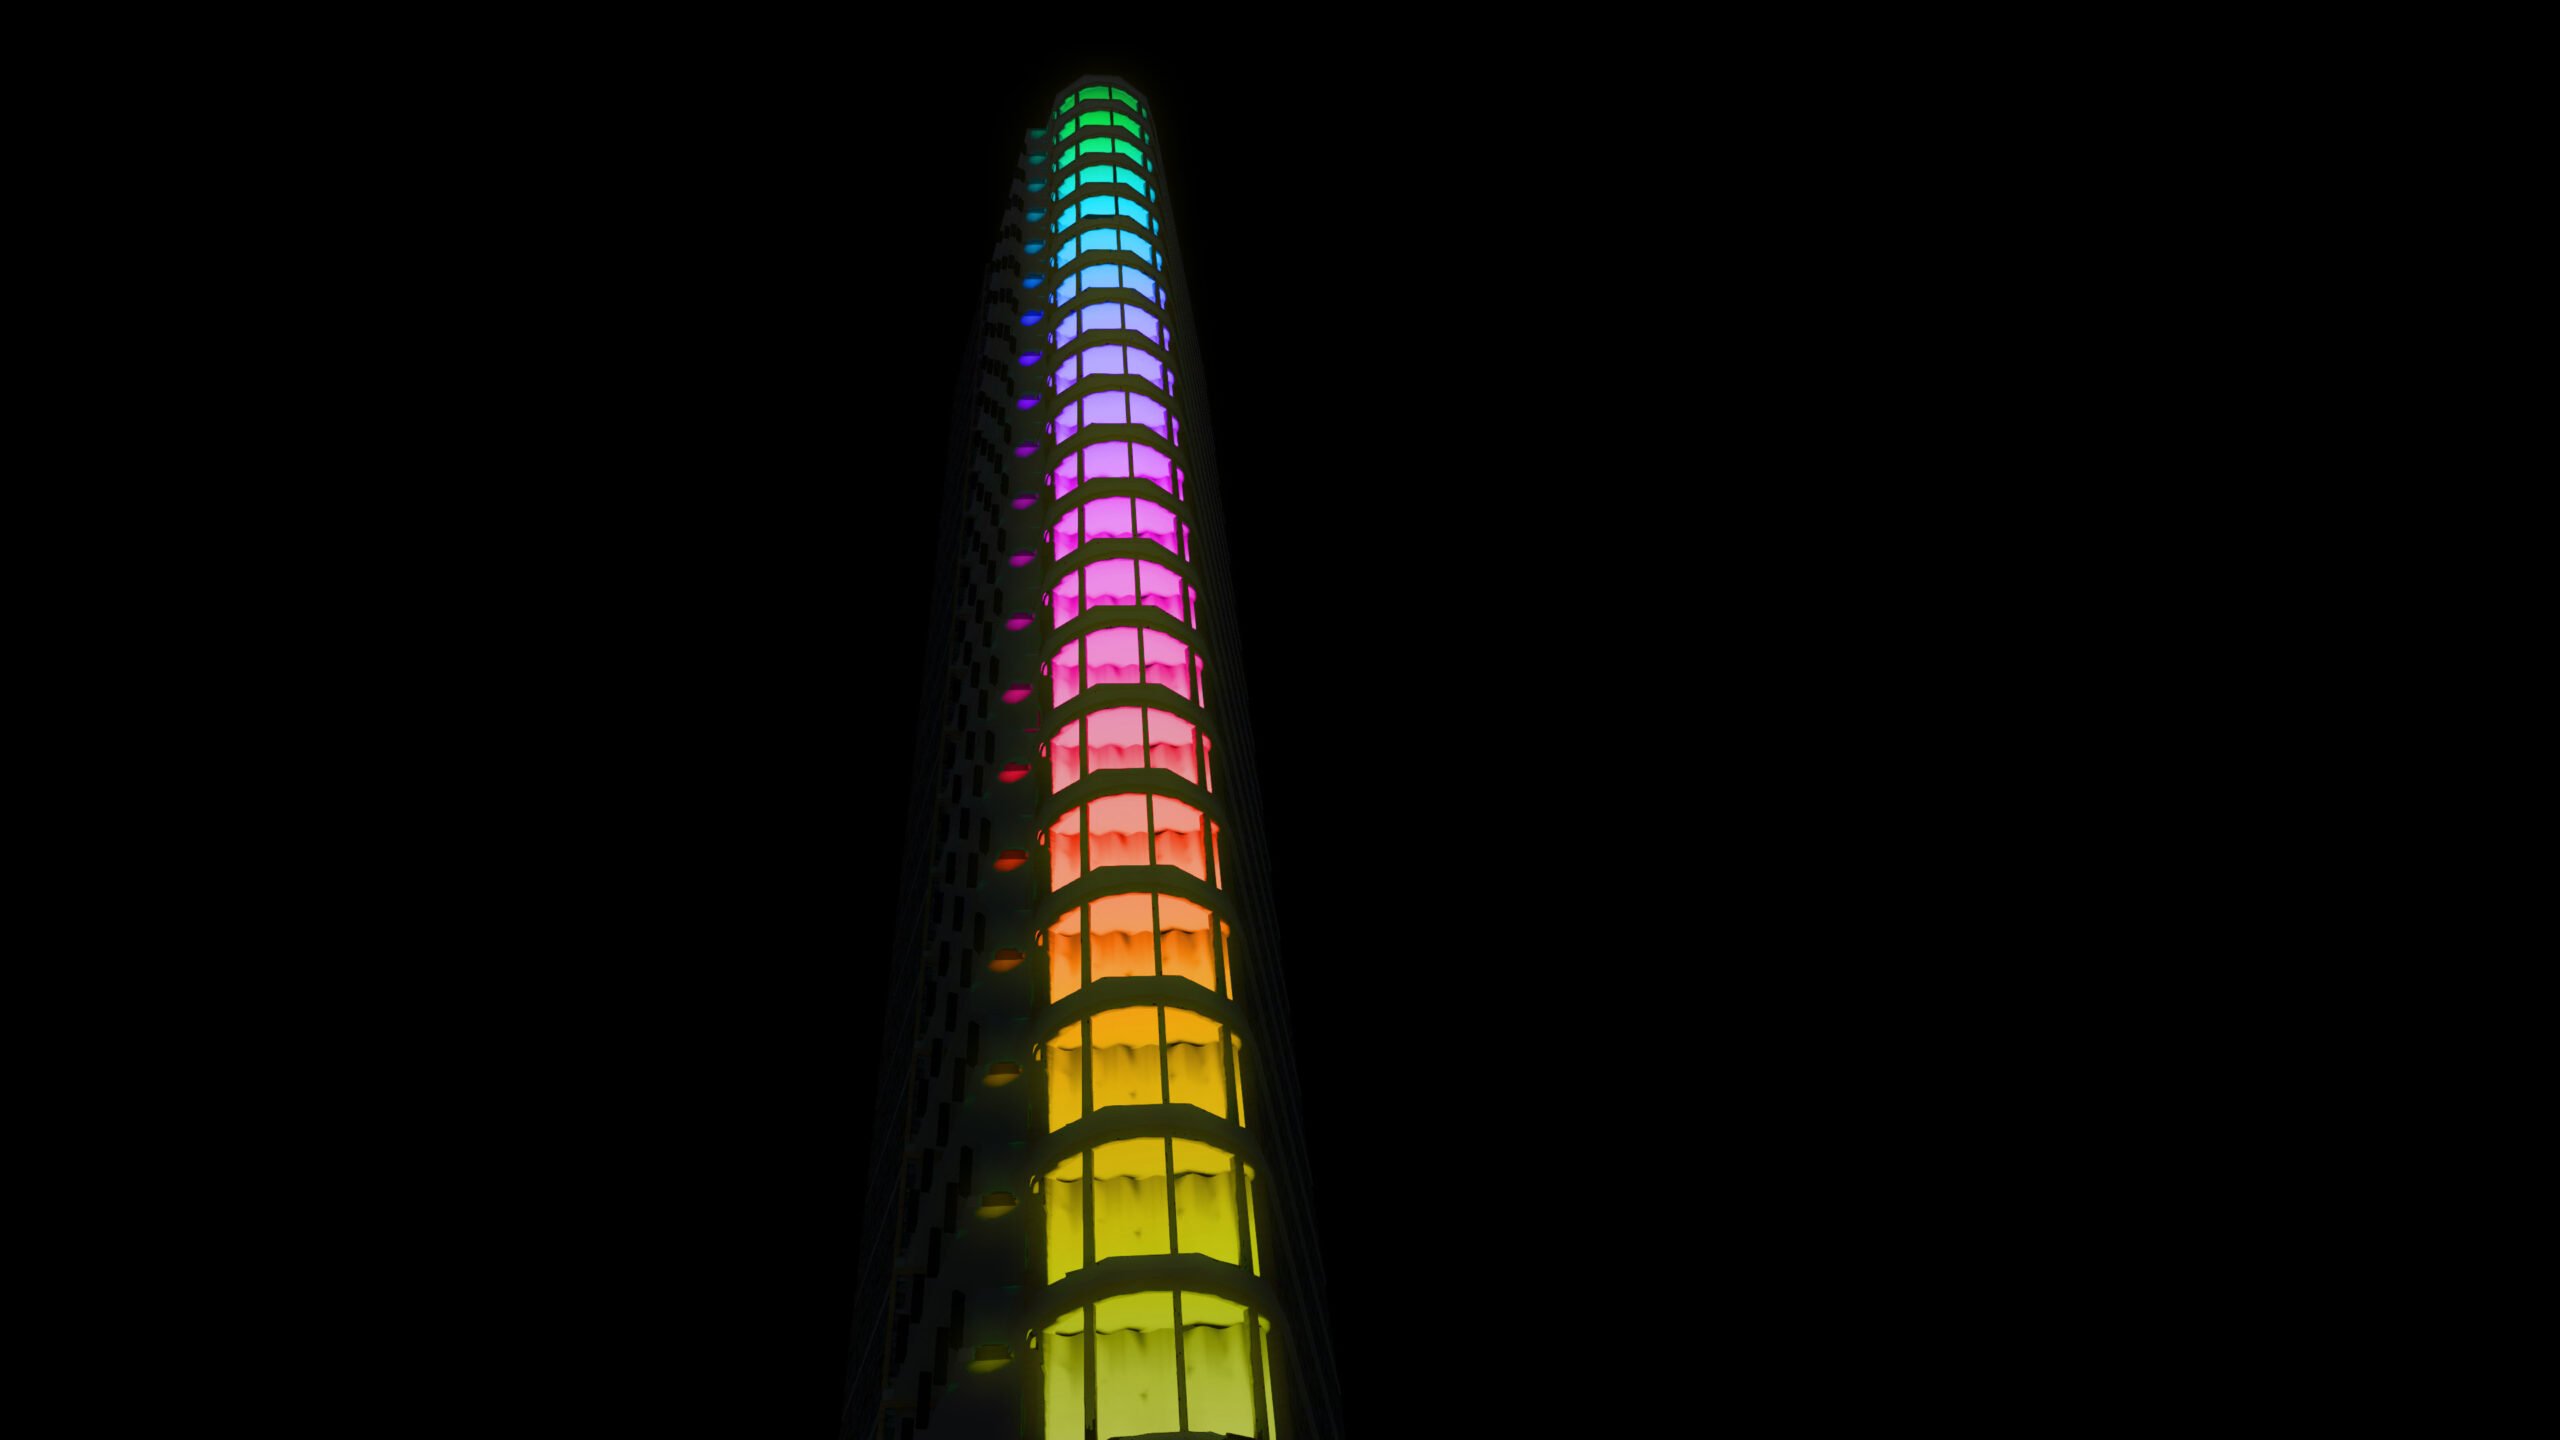 Glow - Vesteda toren